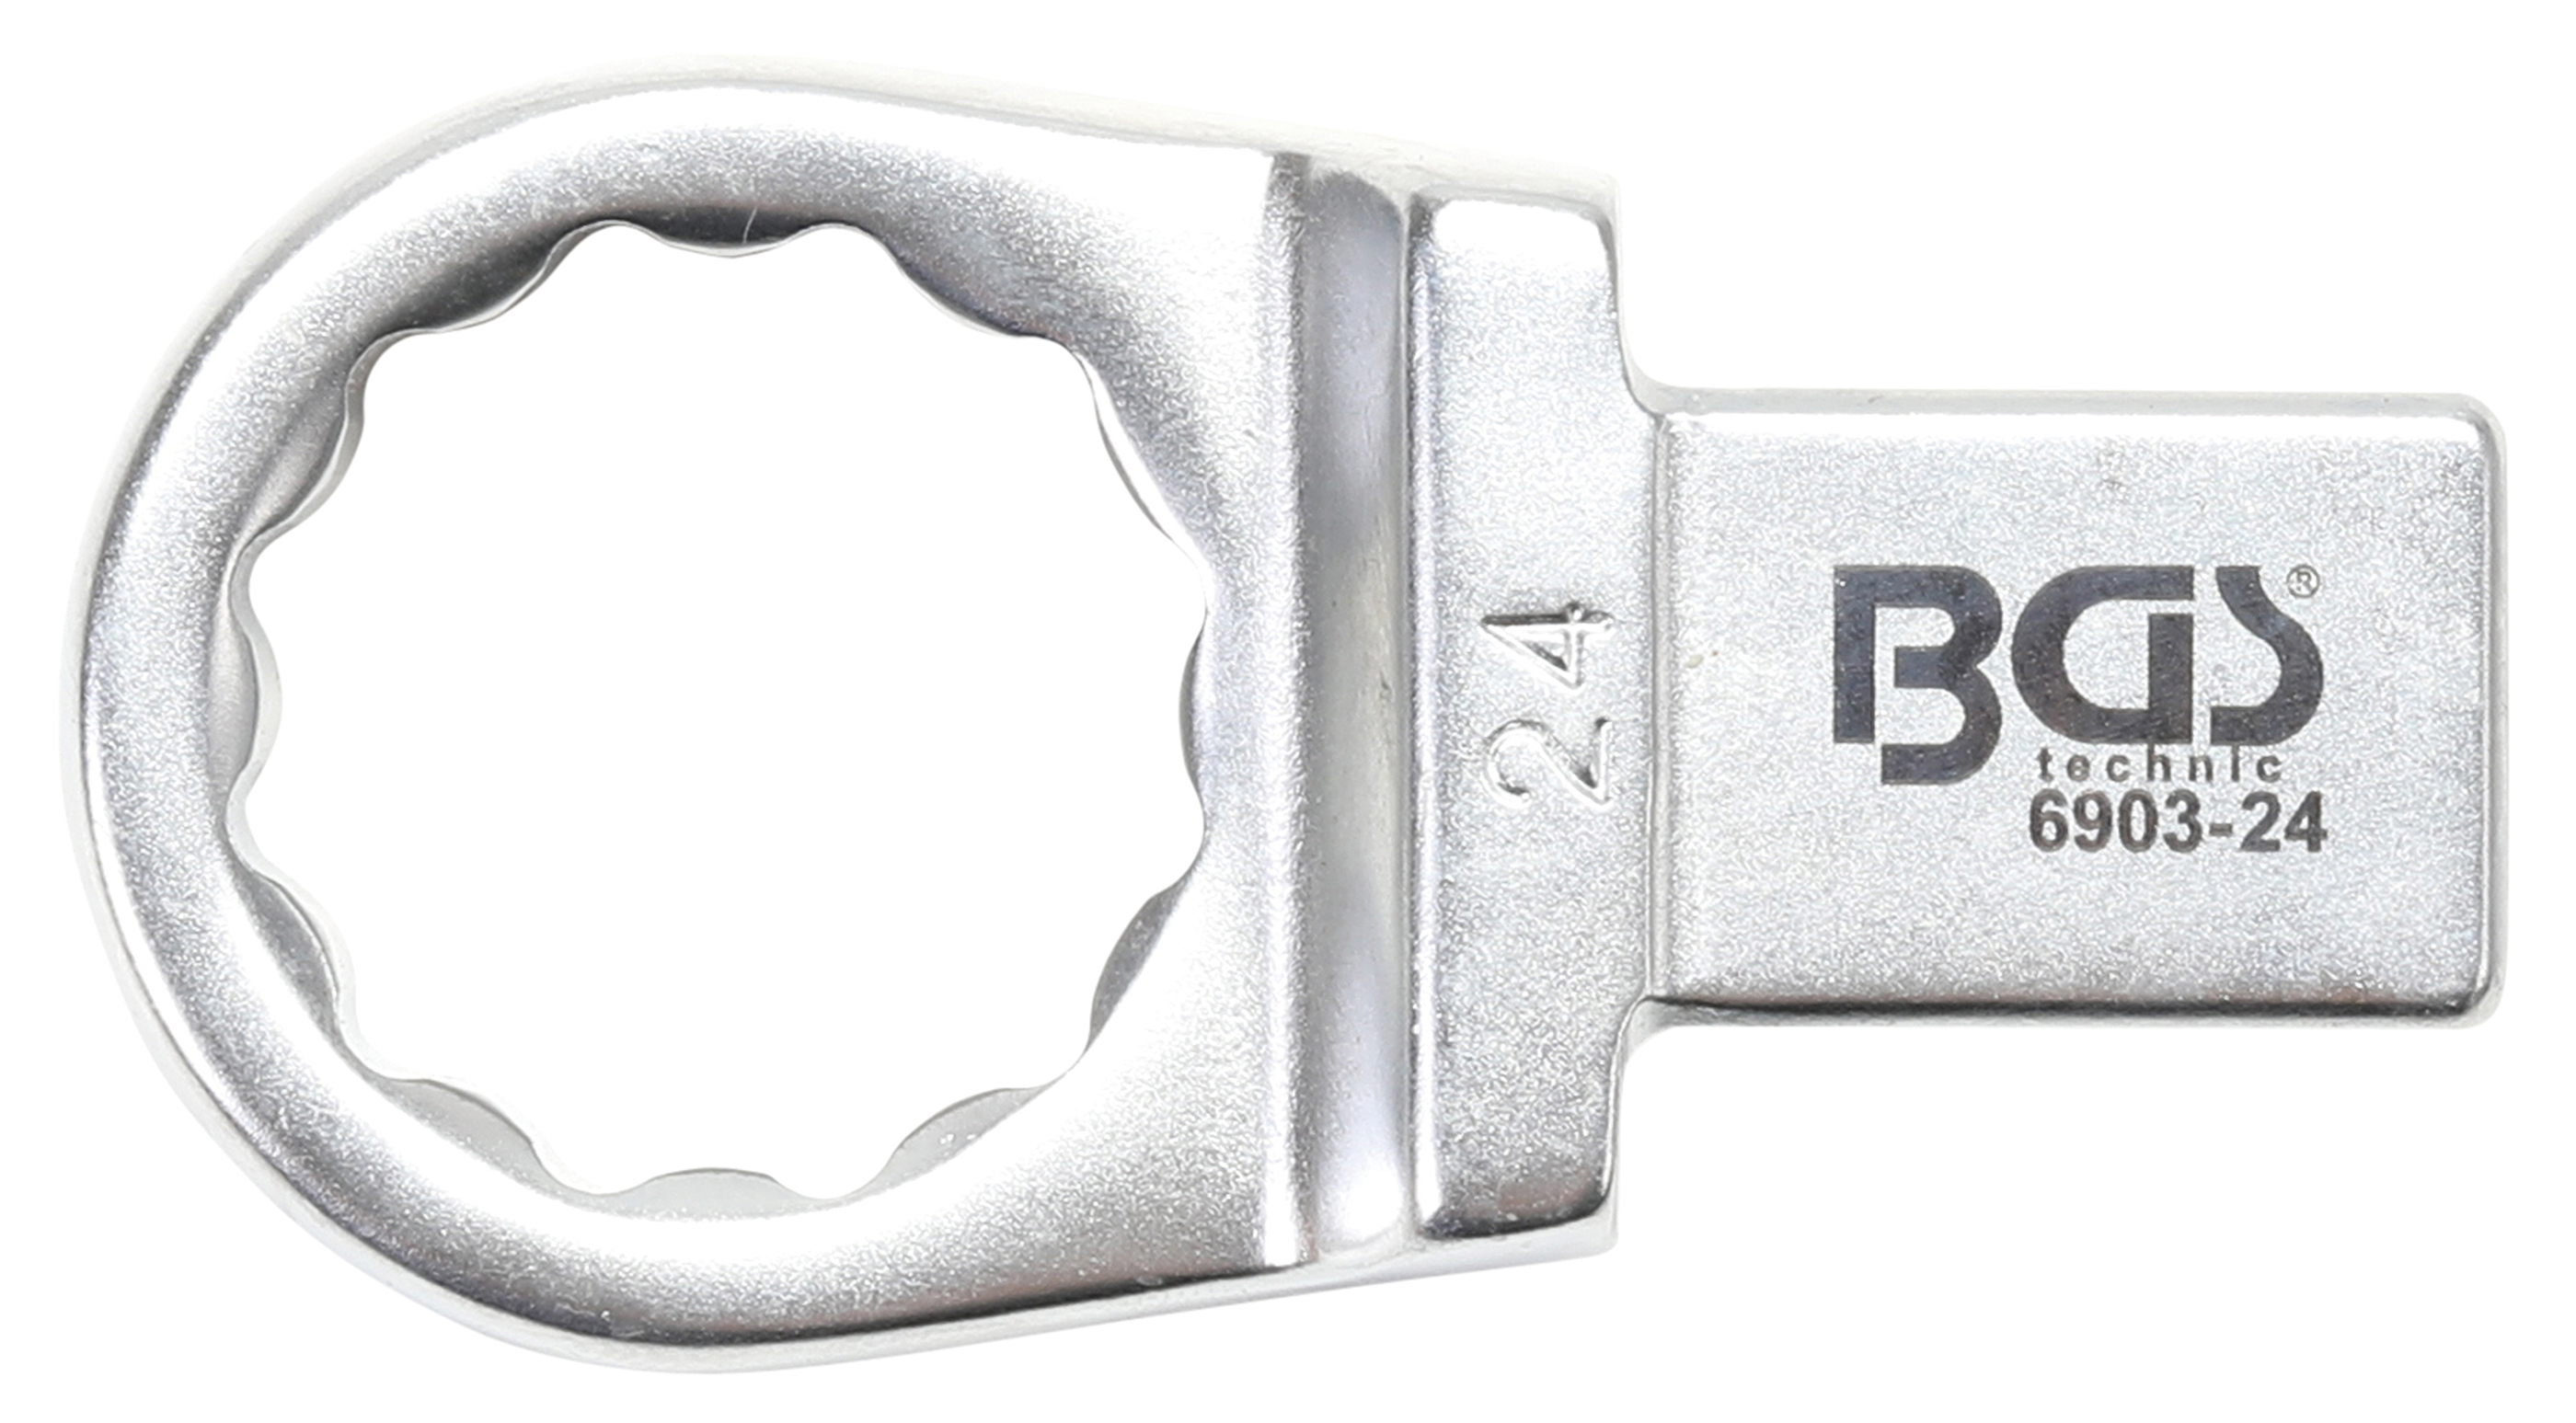 BGS Einsteck-Ringschlüssel | 24 mm | Aufnahme 14 x 18 mm